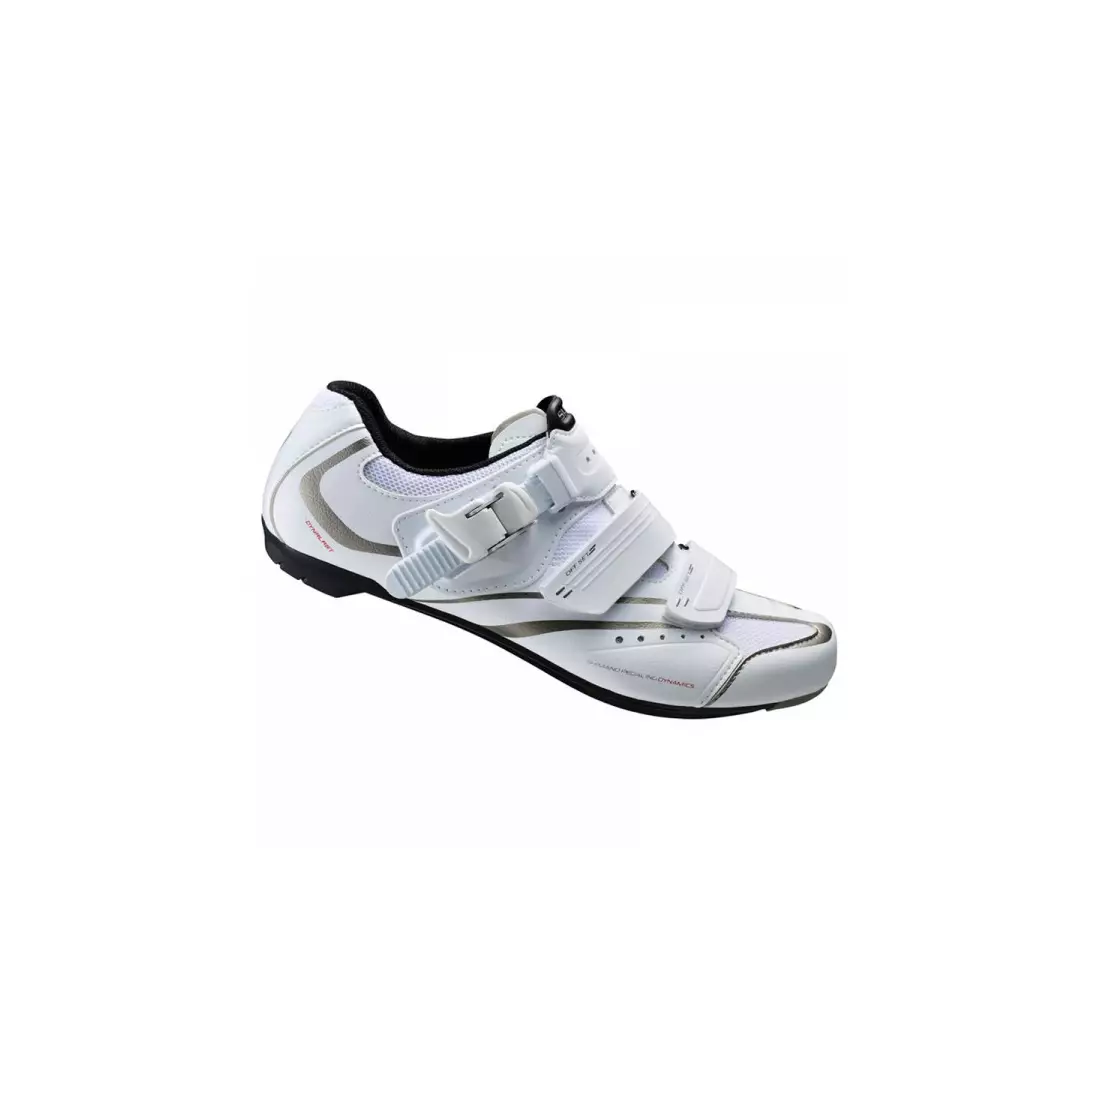 SHIMANO SH-WR42 - dámské silniční boty, barva: bílá